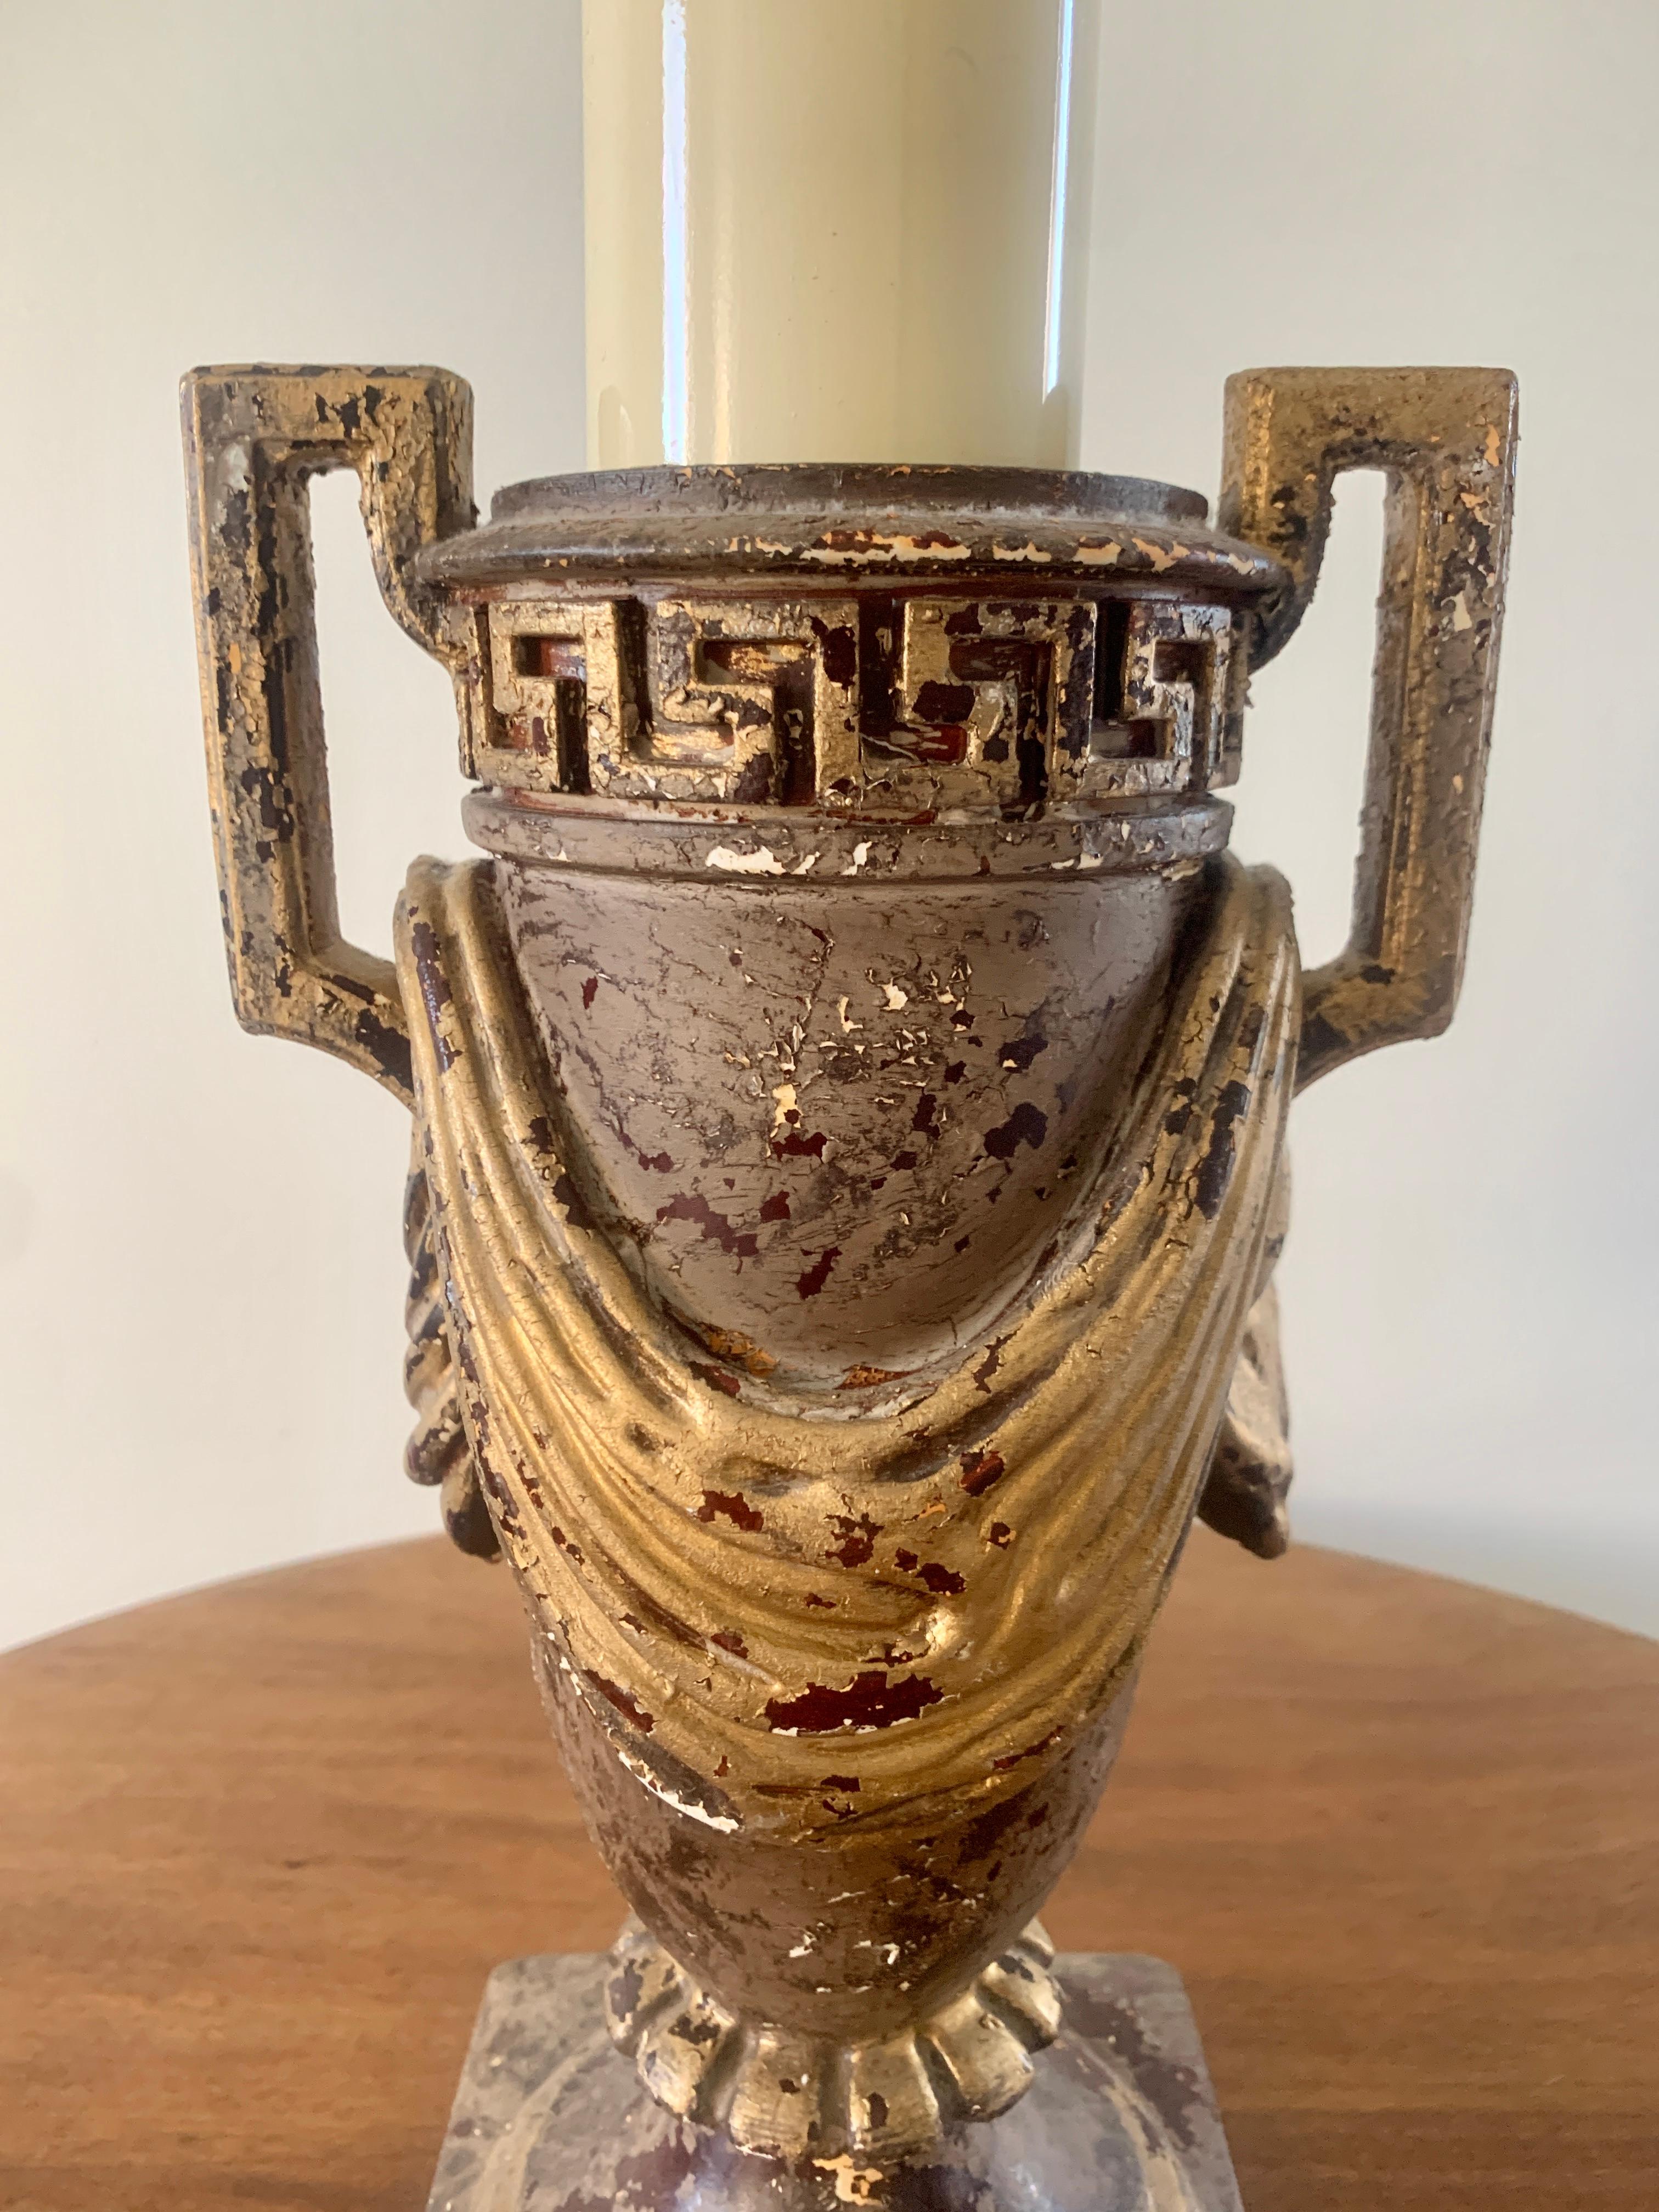 Une magnifique lampe de table de style néoclassique en forme d'urne avec des détails en forme de clé grecque et de houppe.

Mesures : 5,75 